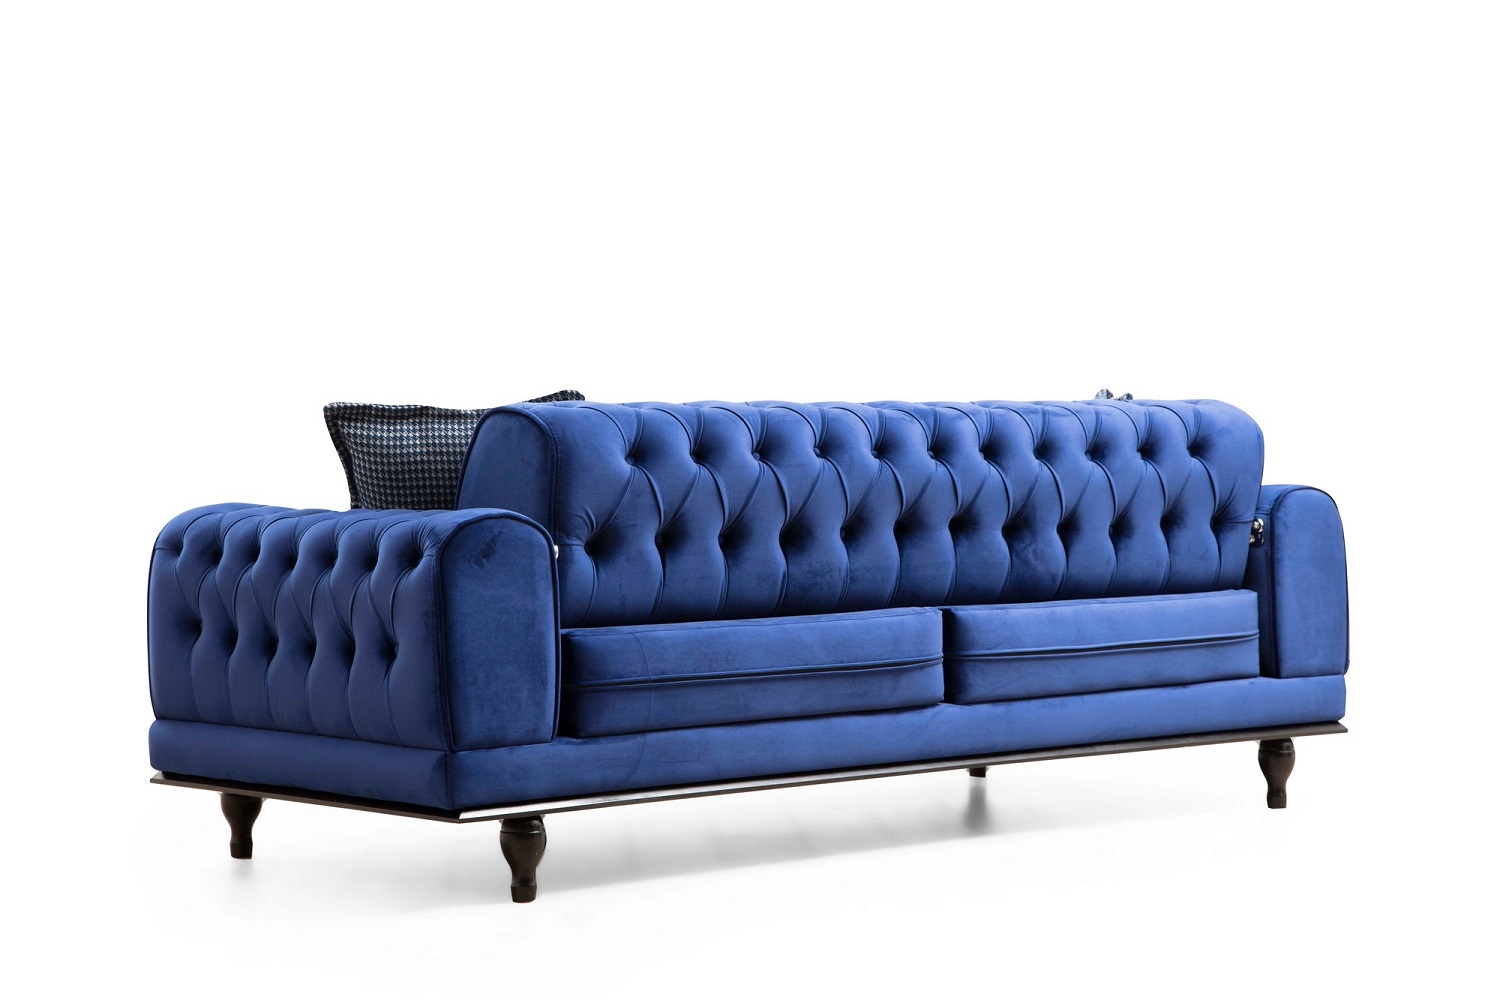 dizajnova-rozkladacia-sedacka-rococo-220-cm-kralovska-modra-5